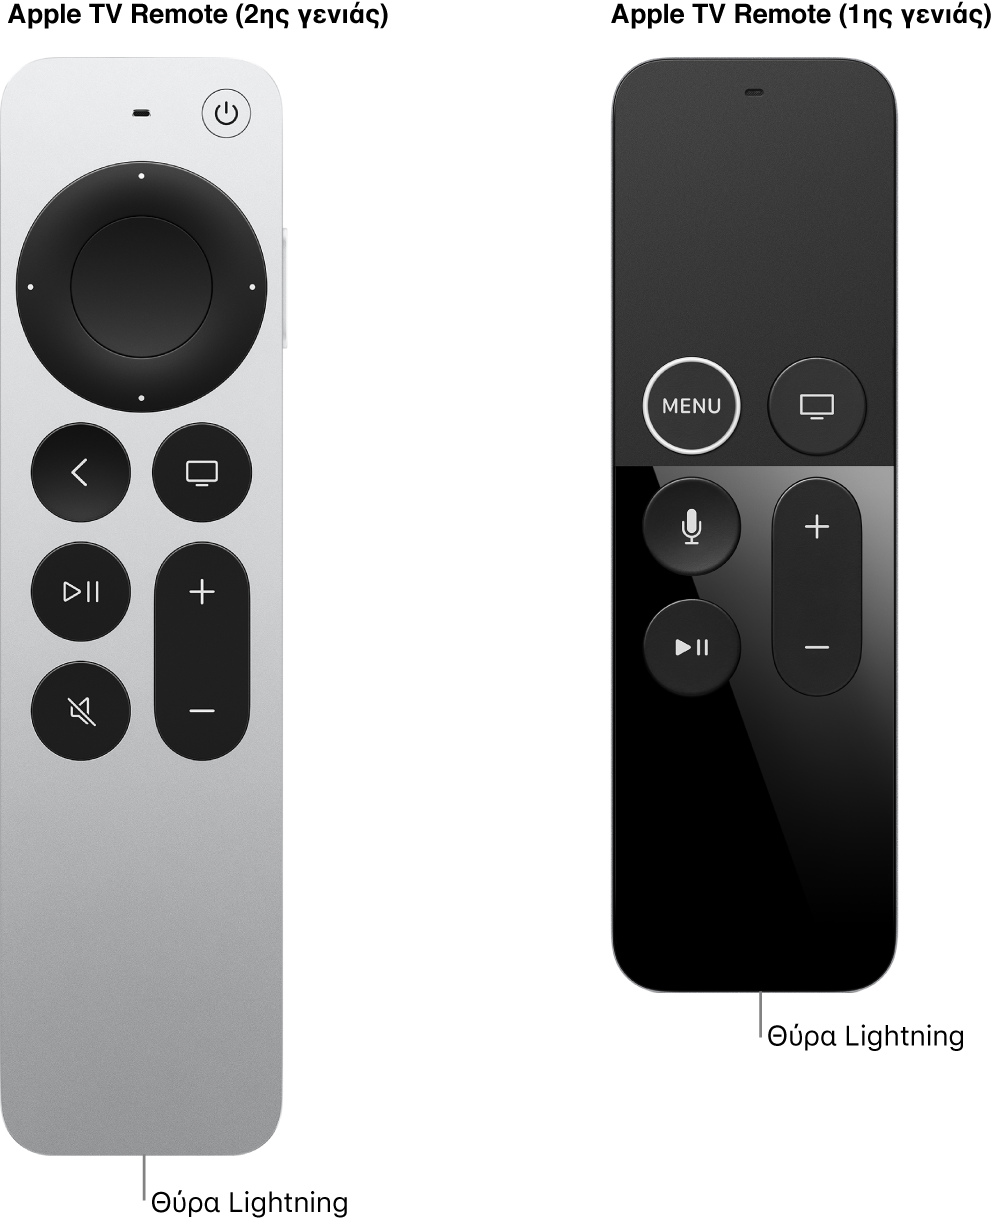 Εικόνα του Apple TV Remote (2ης γενιάς) και του Apple TV Remote (1ης γενιάς) όπου φαίνεται η υποδοχή Lightning